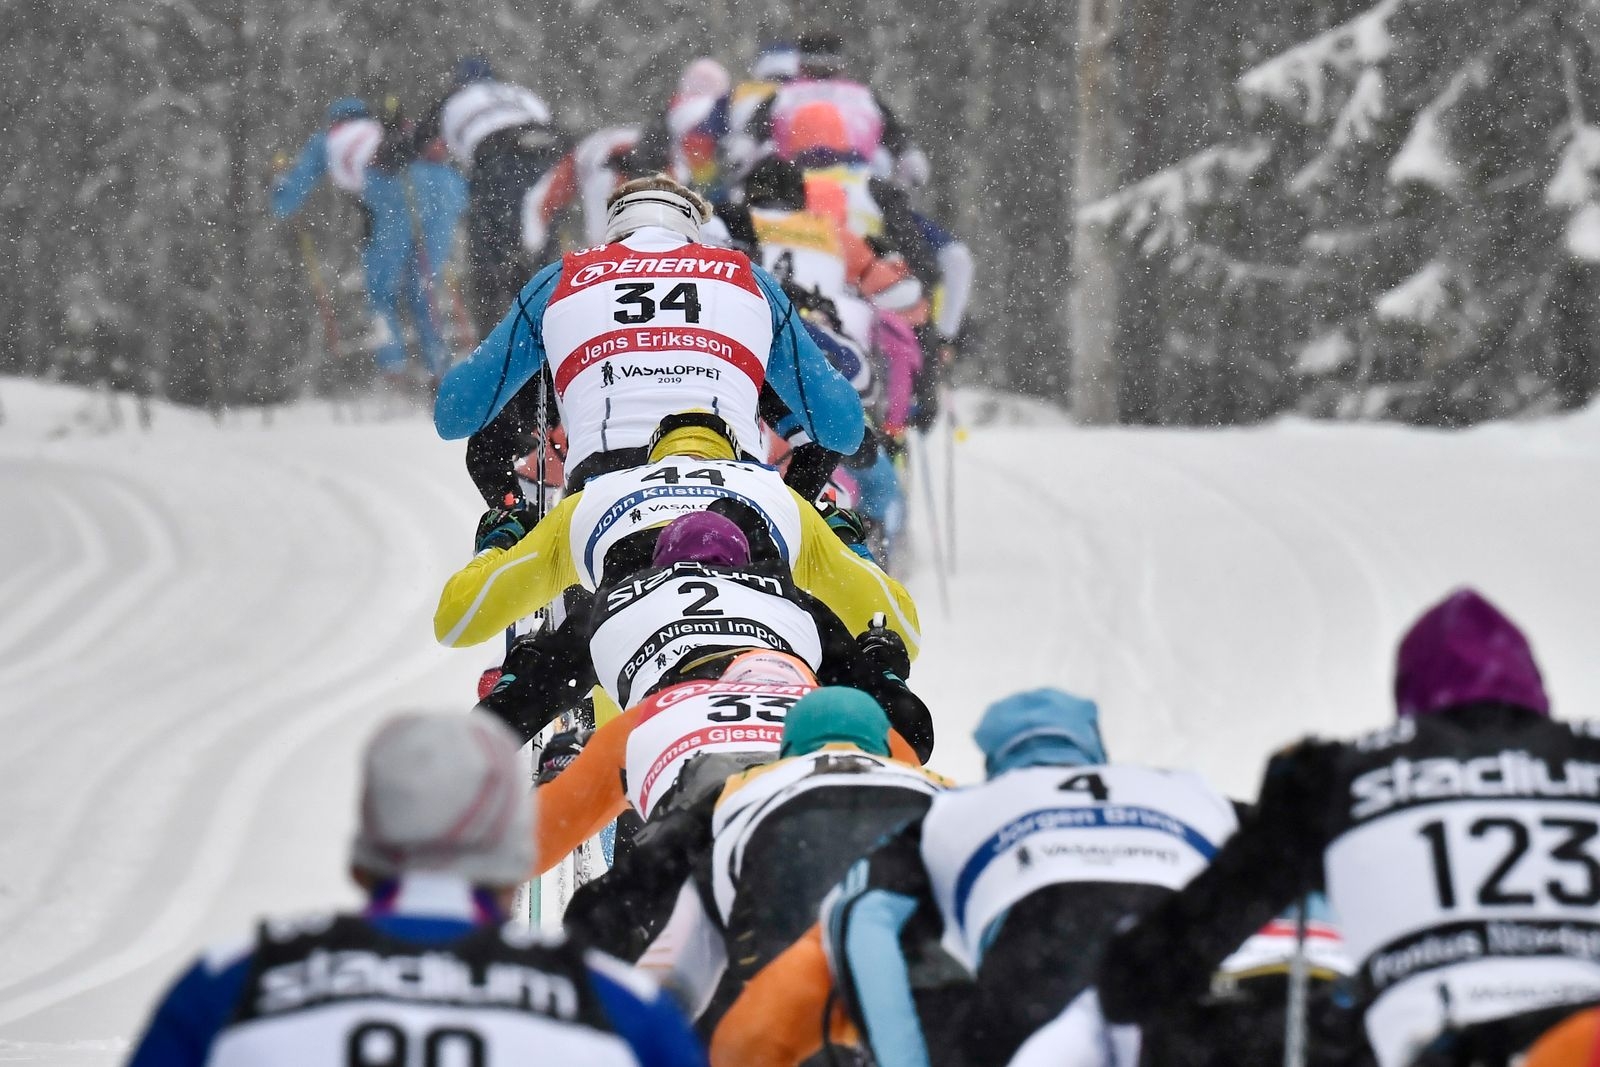 OXBERG 2019-03-03
Skidåkare i Lundbergsbacken före Oxberg under Vasaloppet 2019.
Foto Ulf Palm / TT / Kod 9110